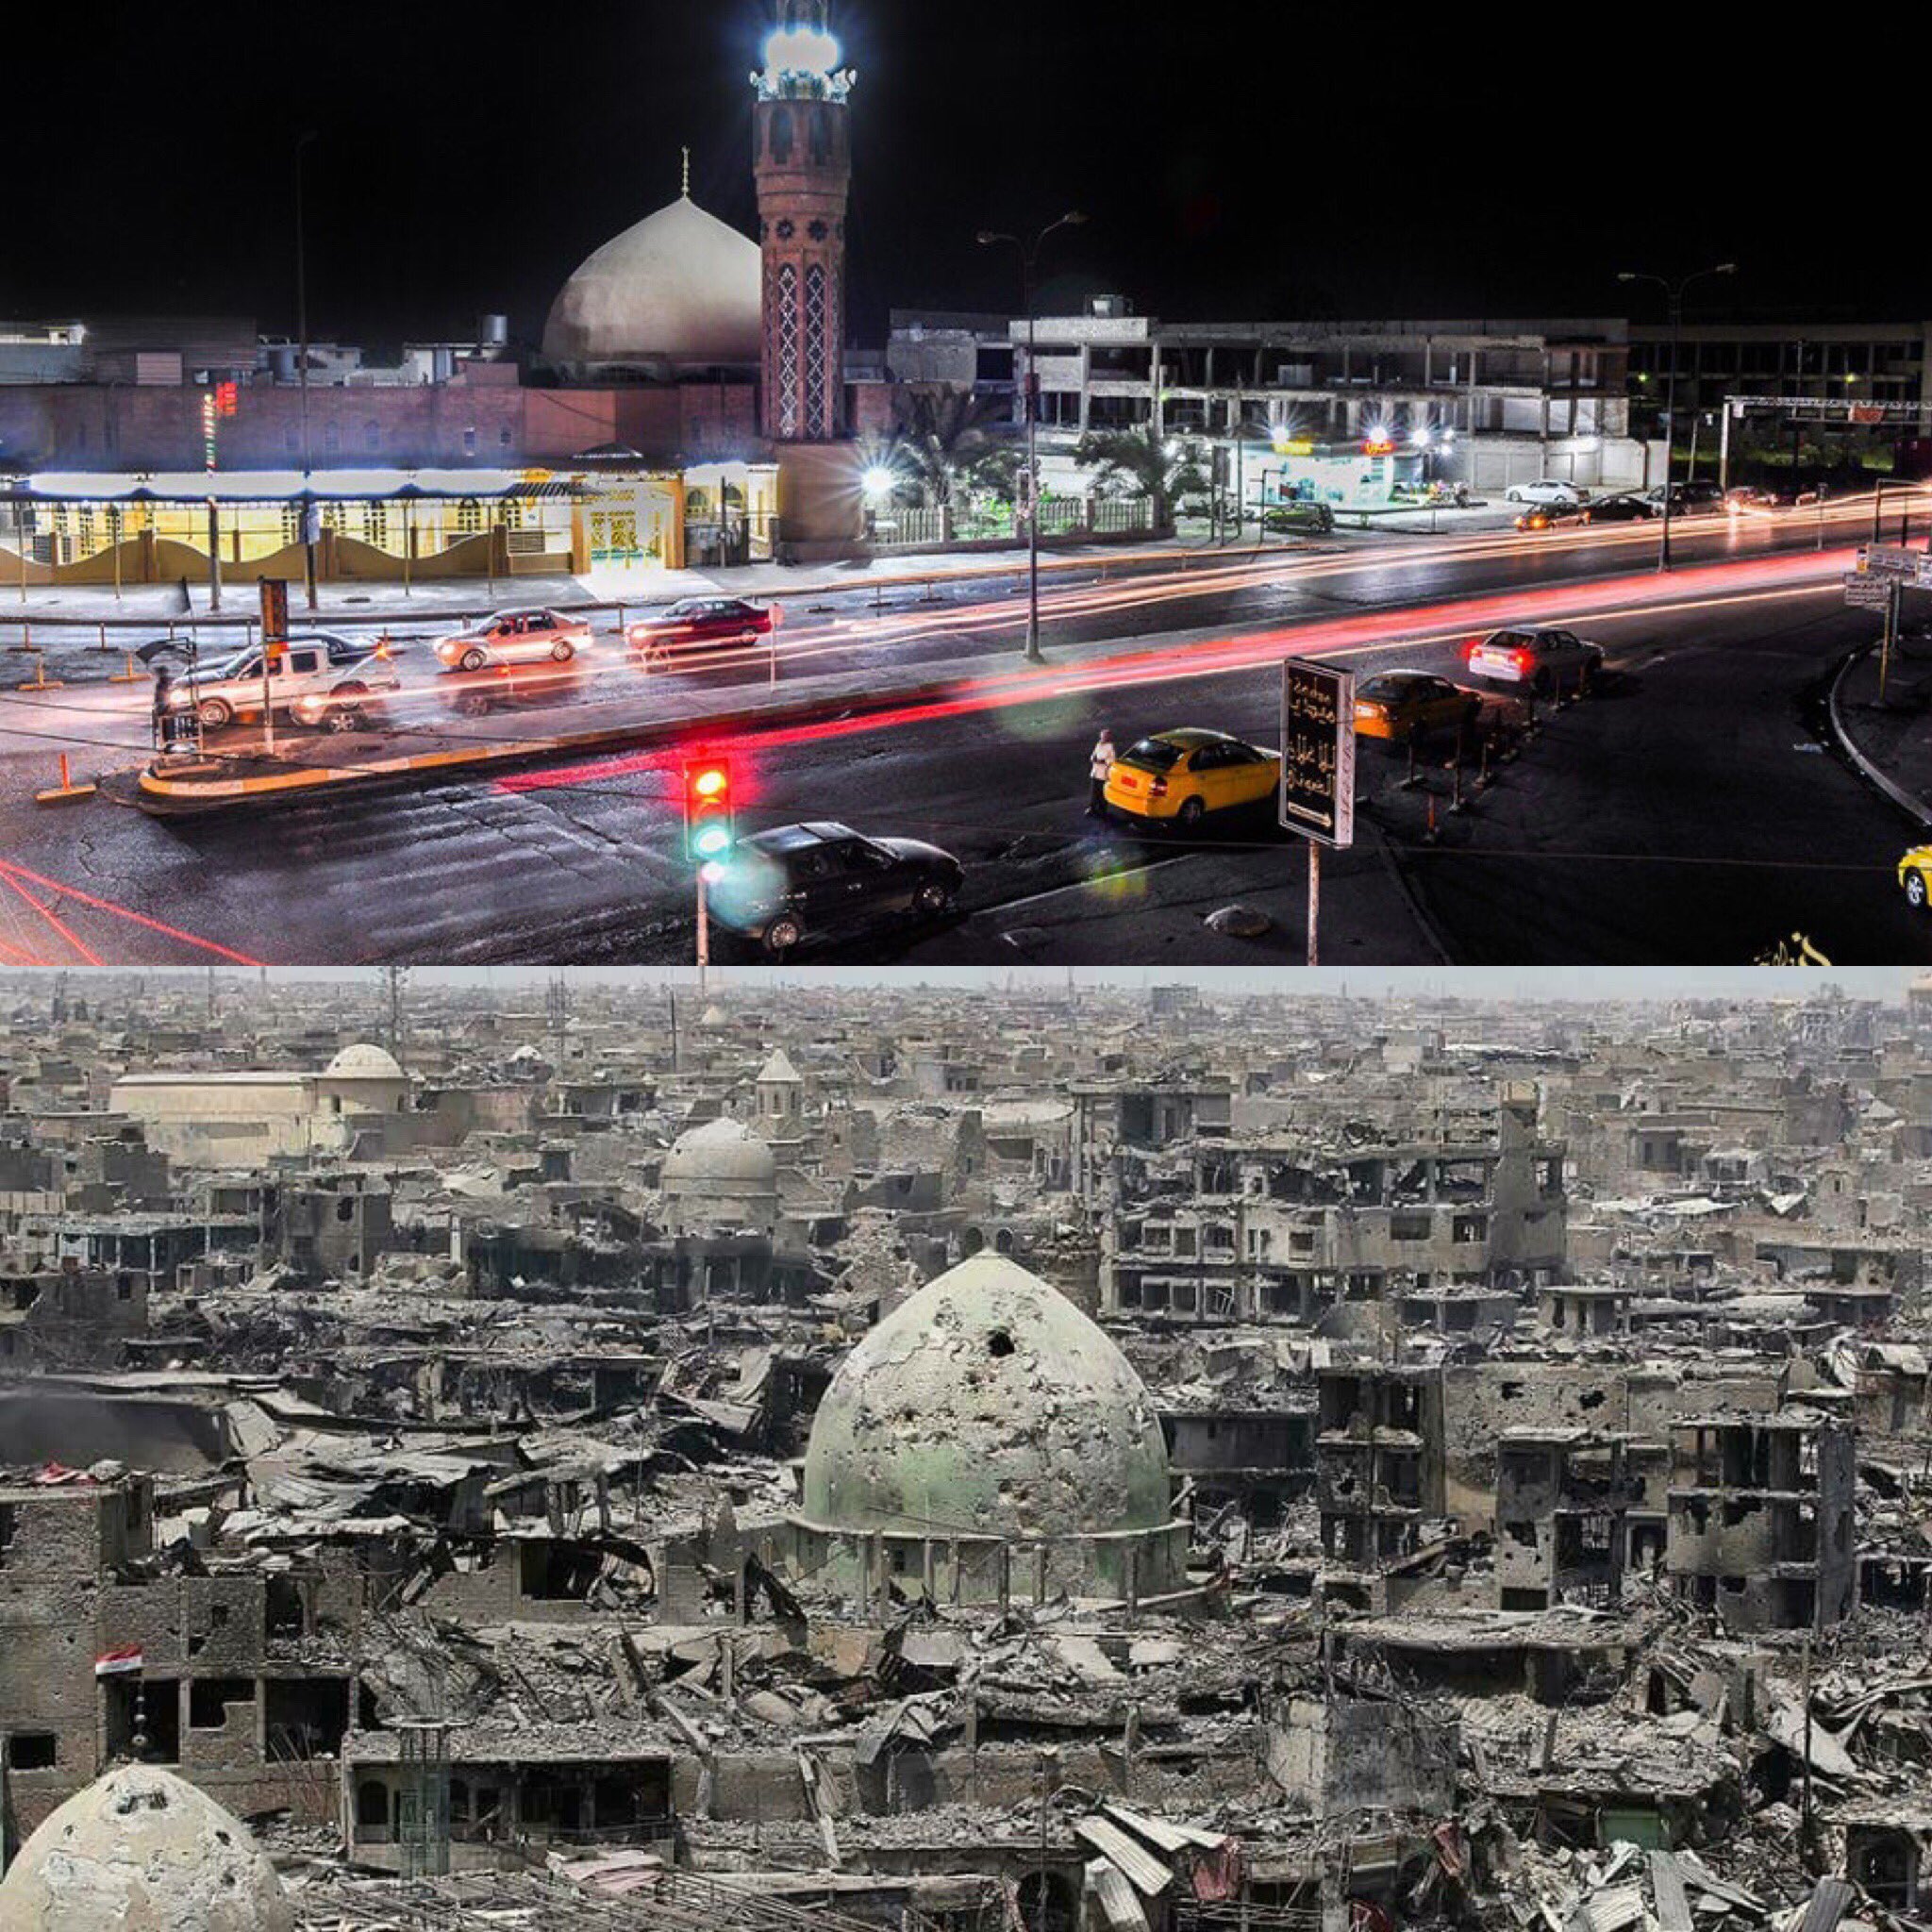 Ирак до американцев и после